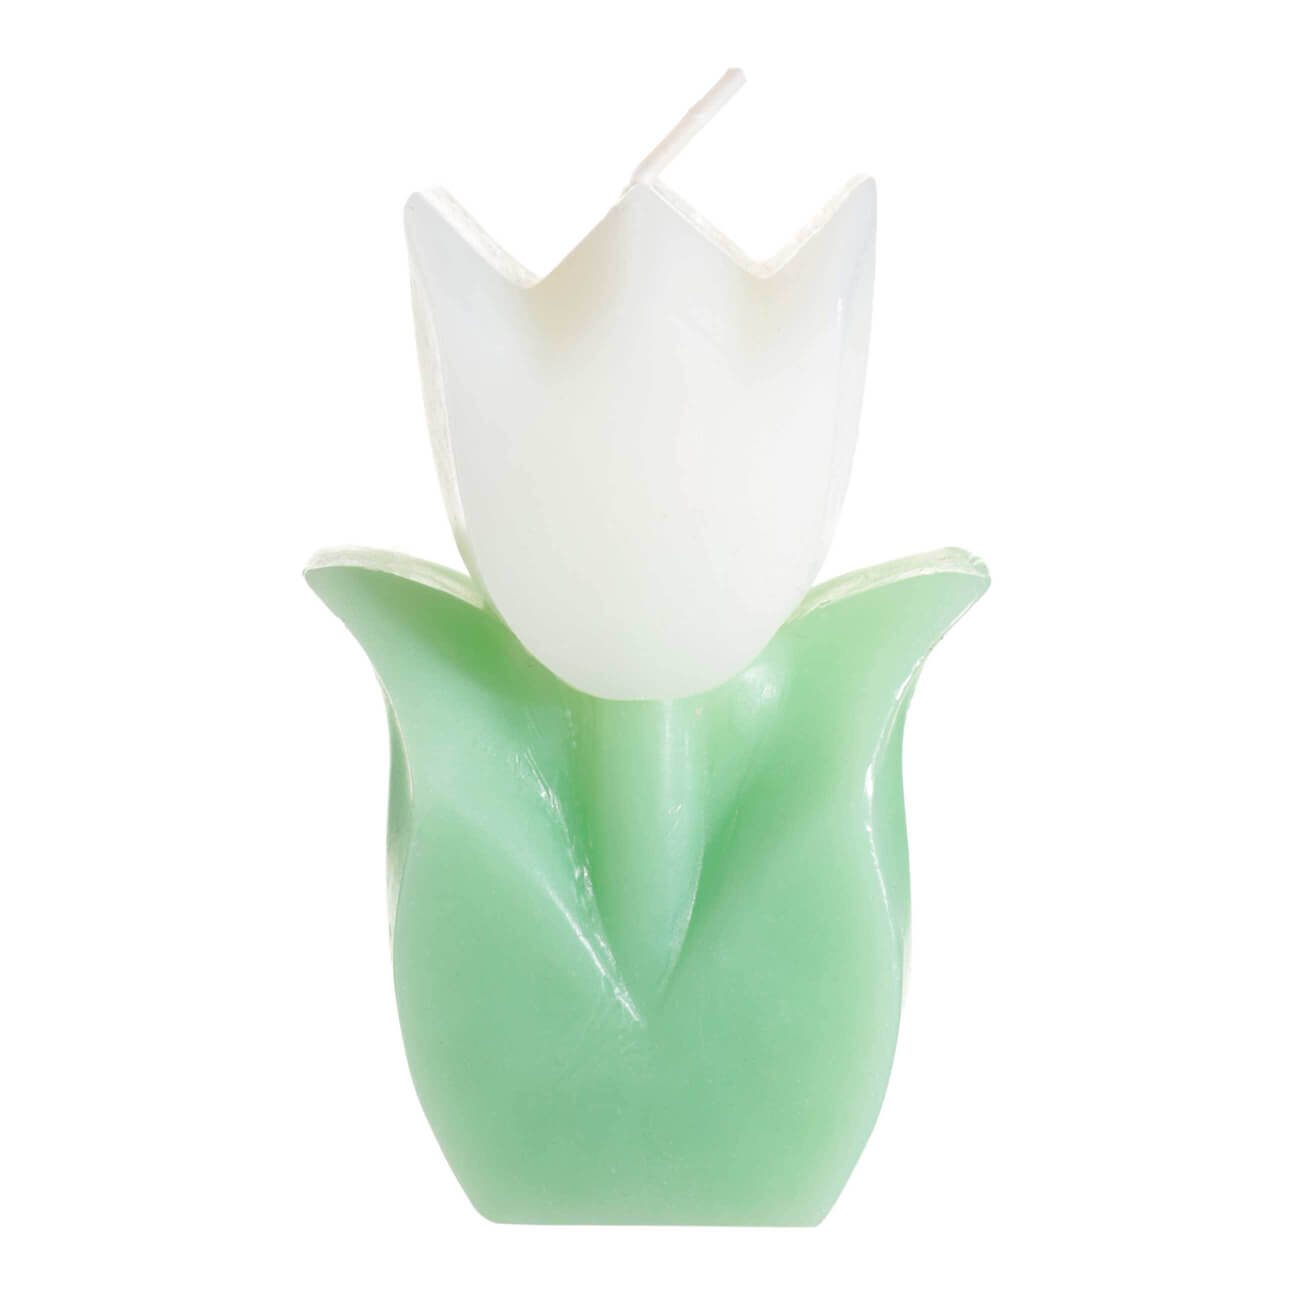 Свеча, 10 см, бело-зеленая, Тюльпан, Tulip garden свеча античная 2 3х 25 см лакированная металлик